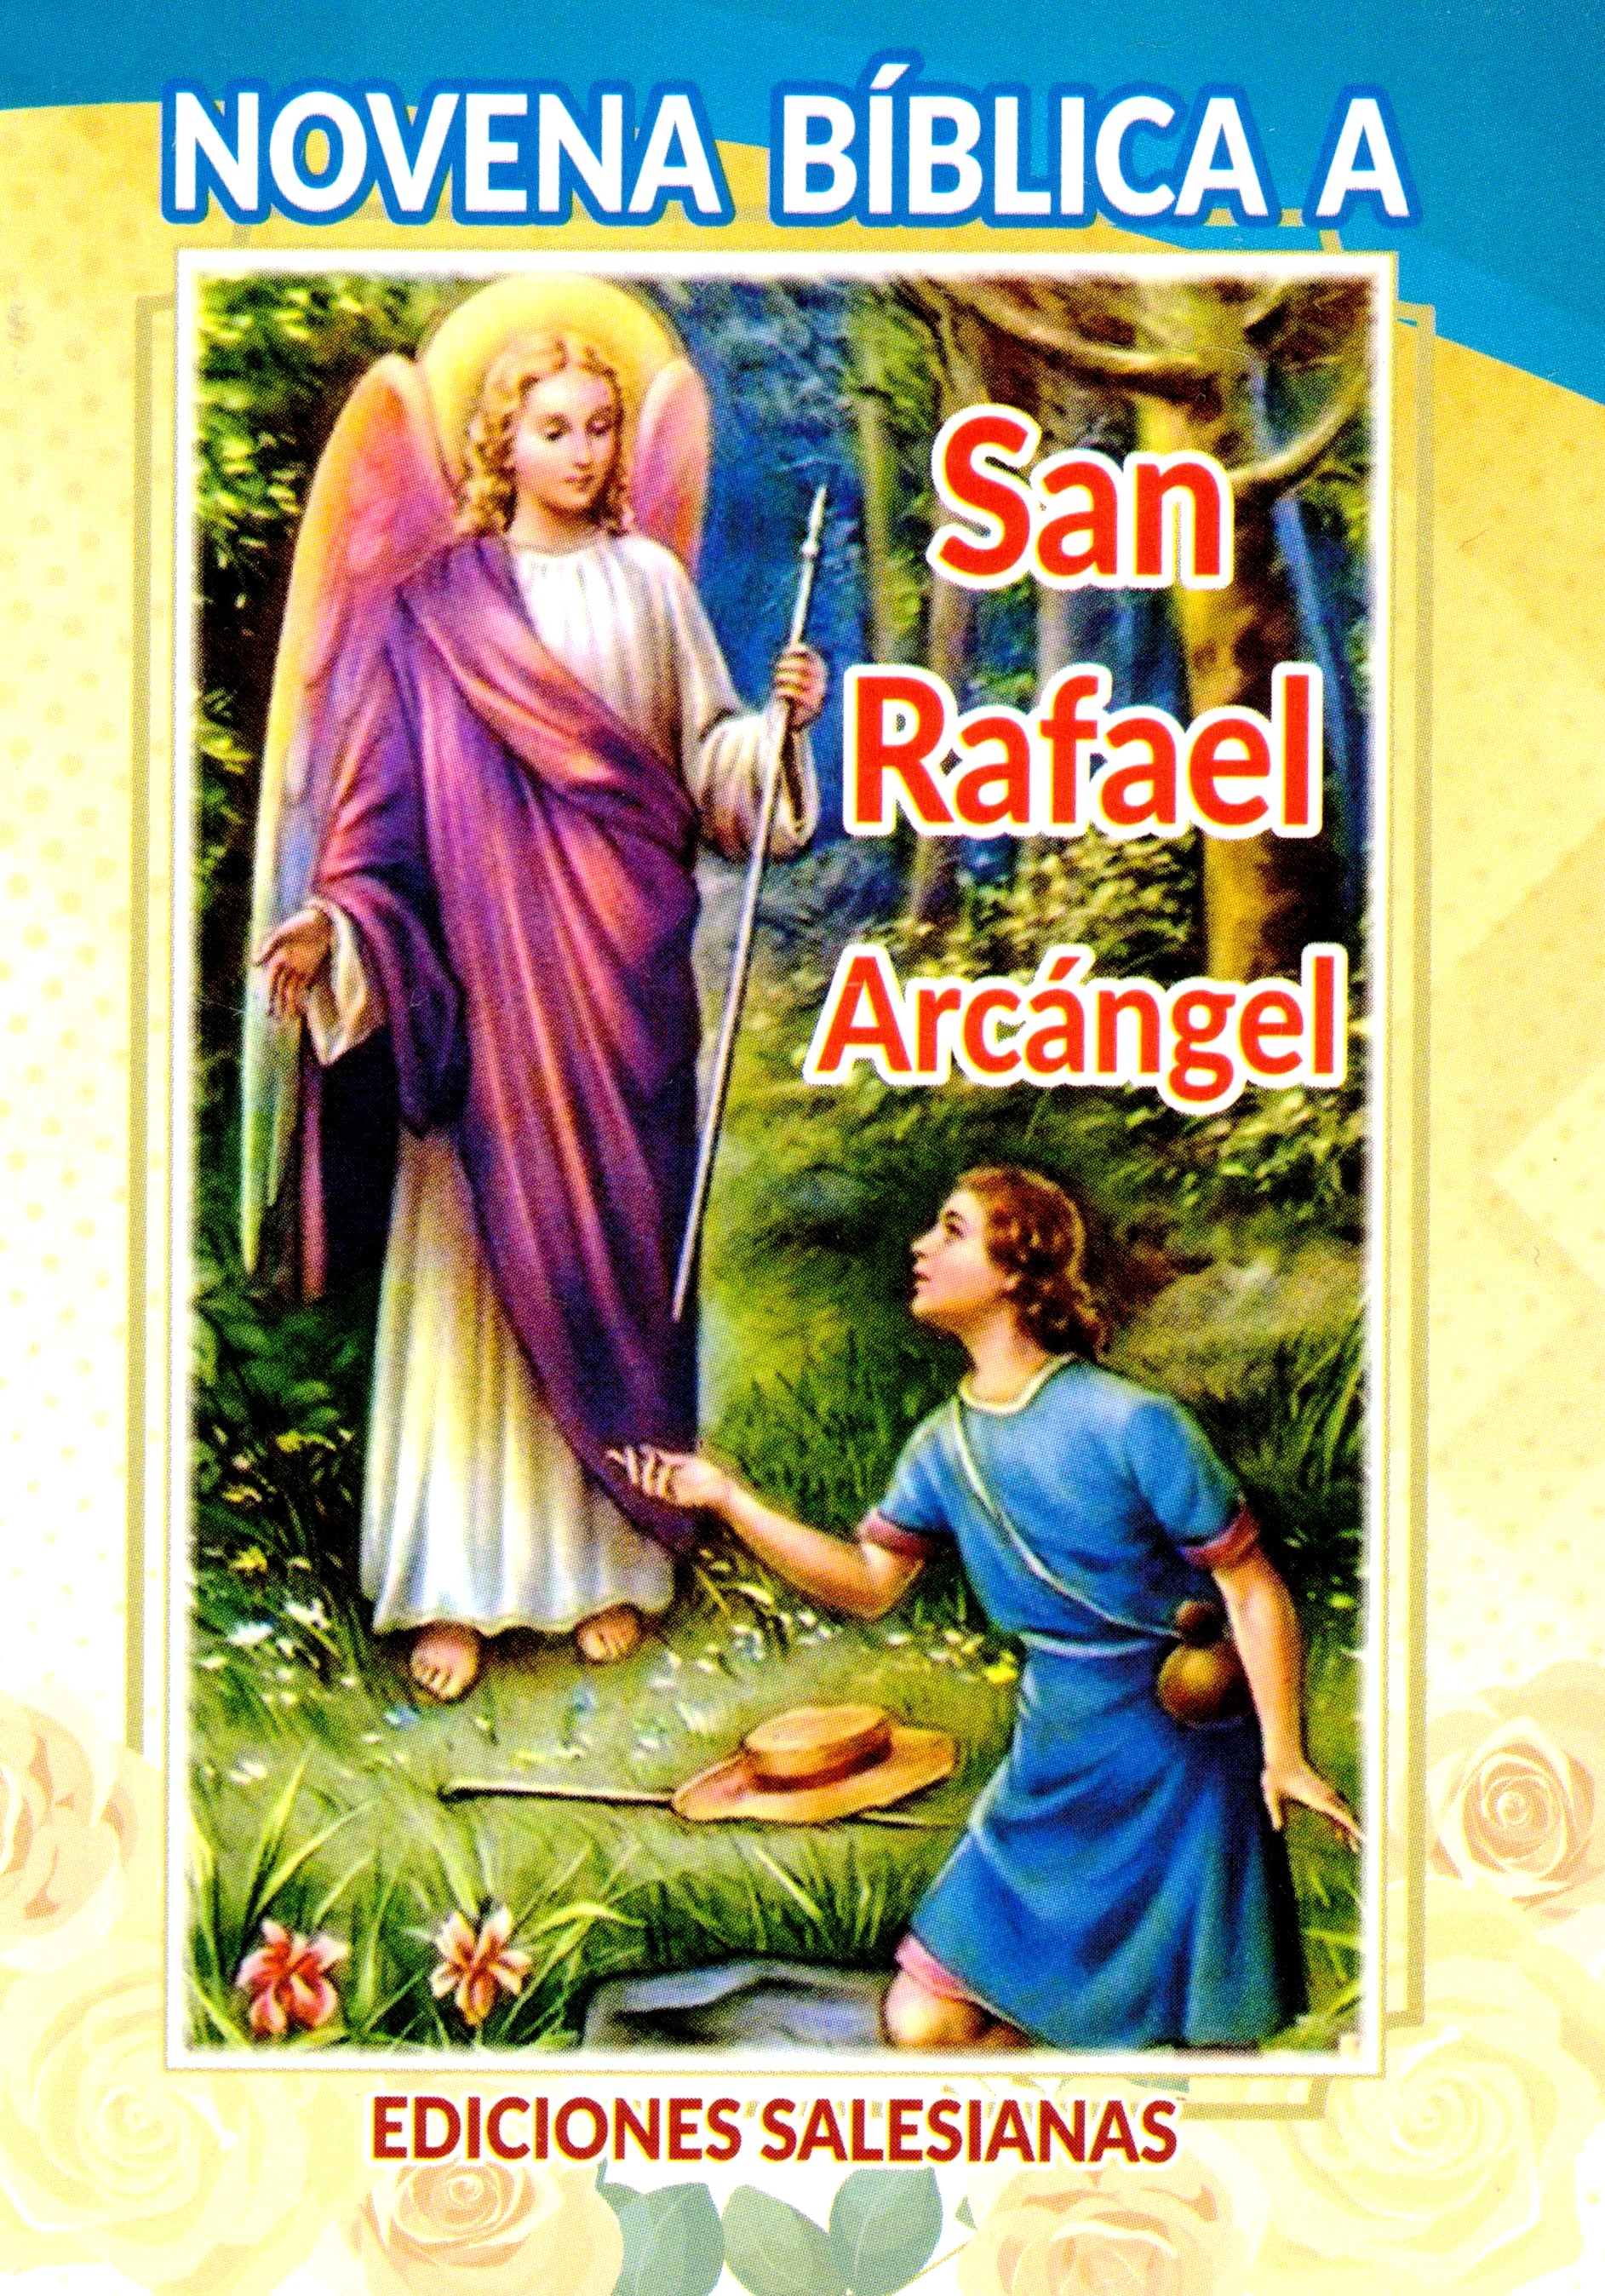 Novena Bíblica a San Rafael Arcángel